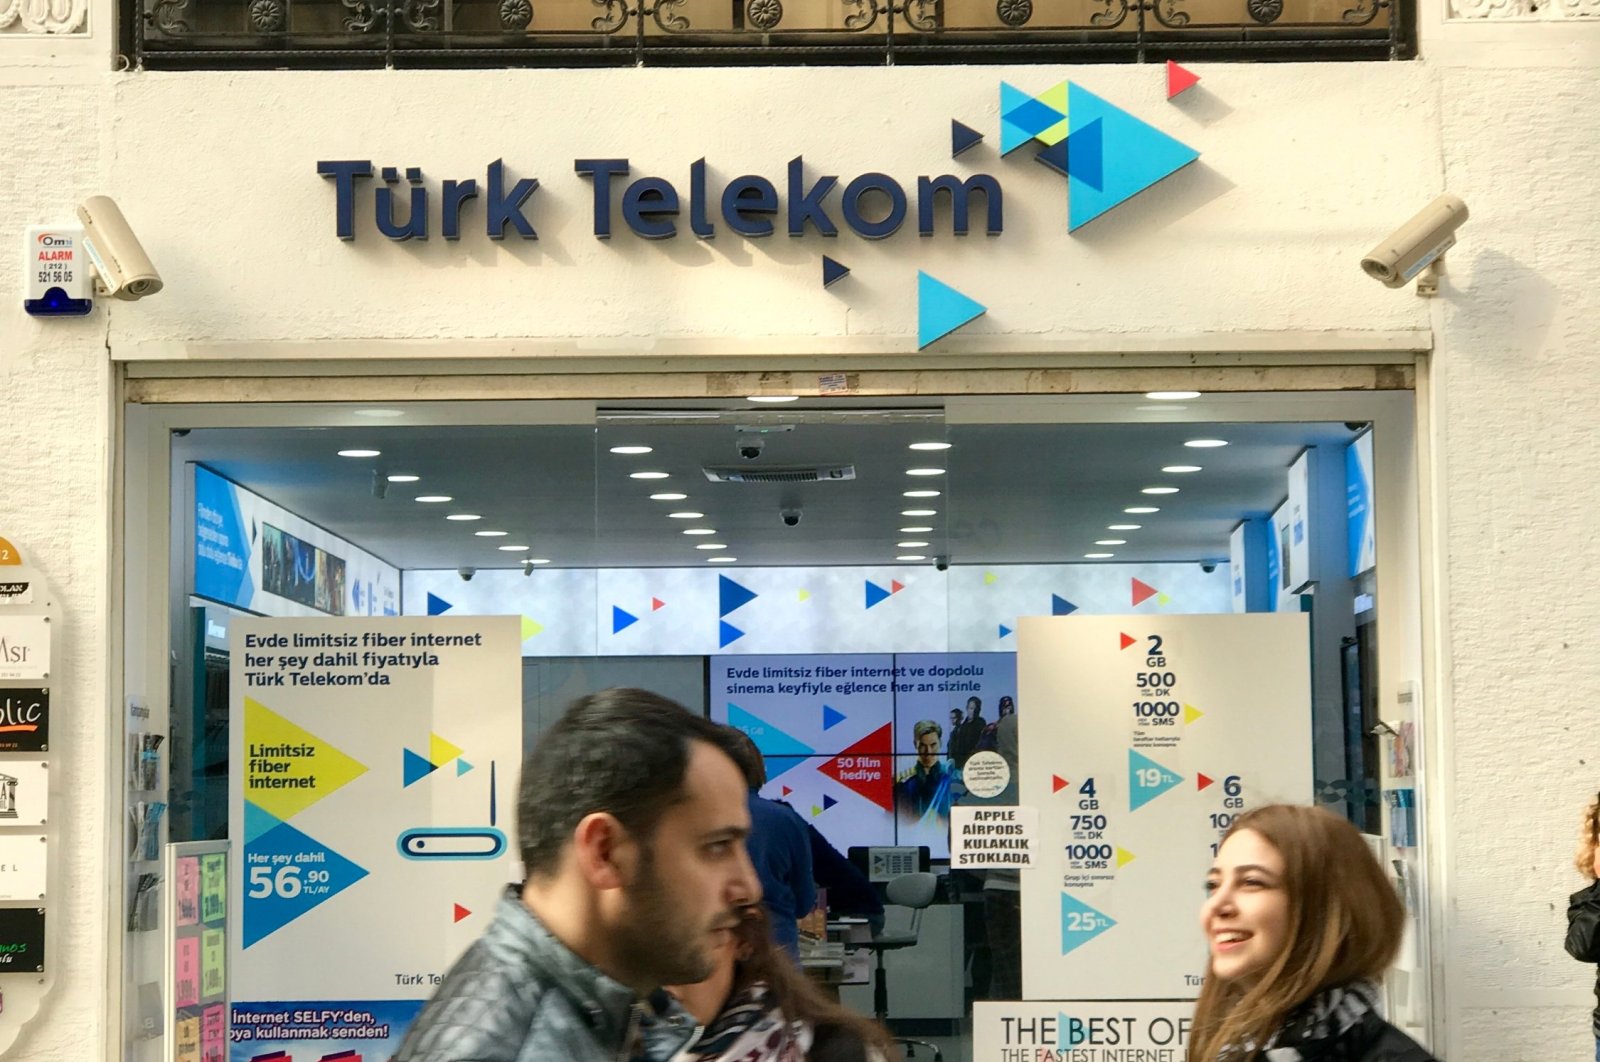 Perusahaan Türk Telekom menerima 4 penghargaan pada evaluasi global